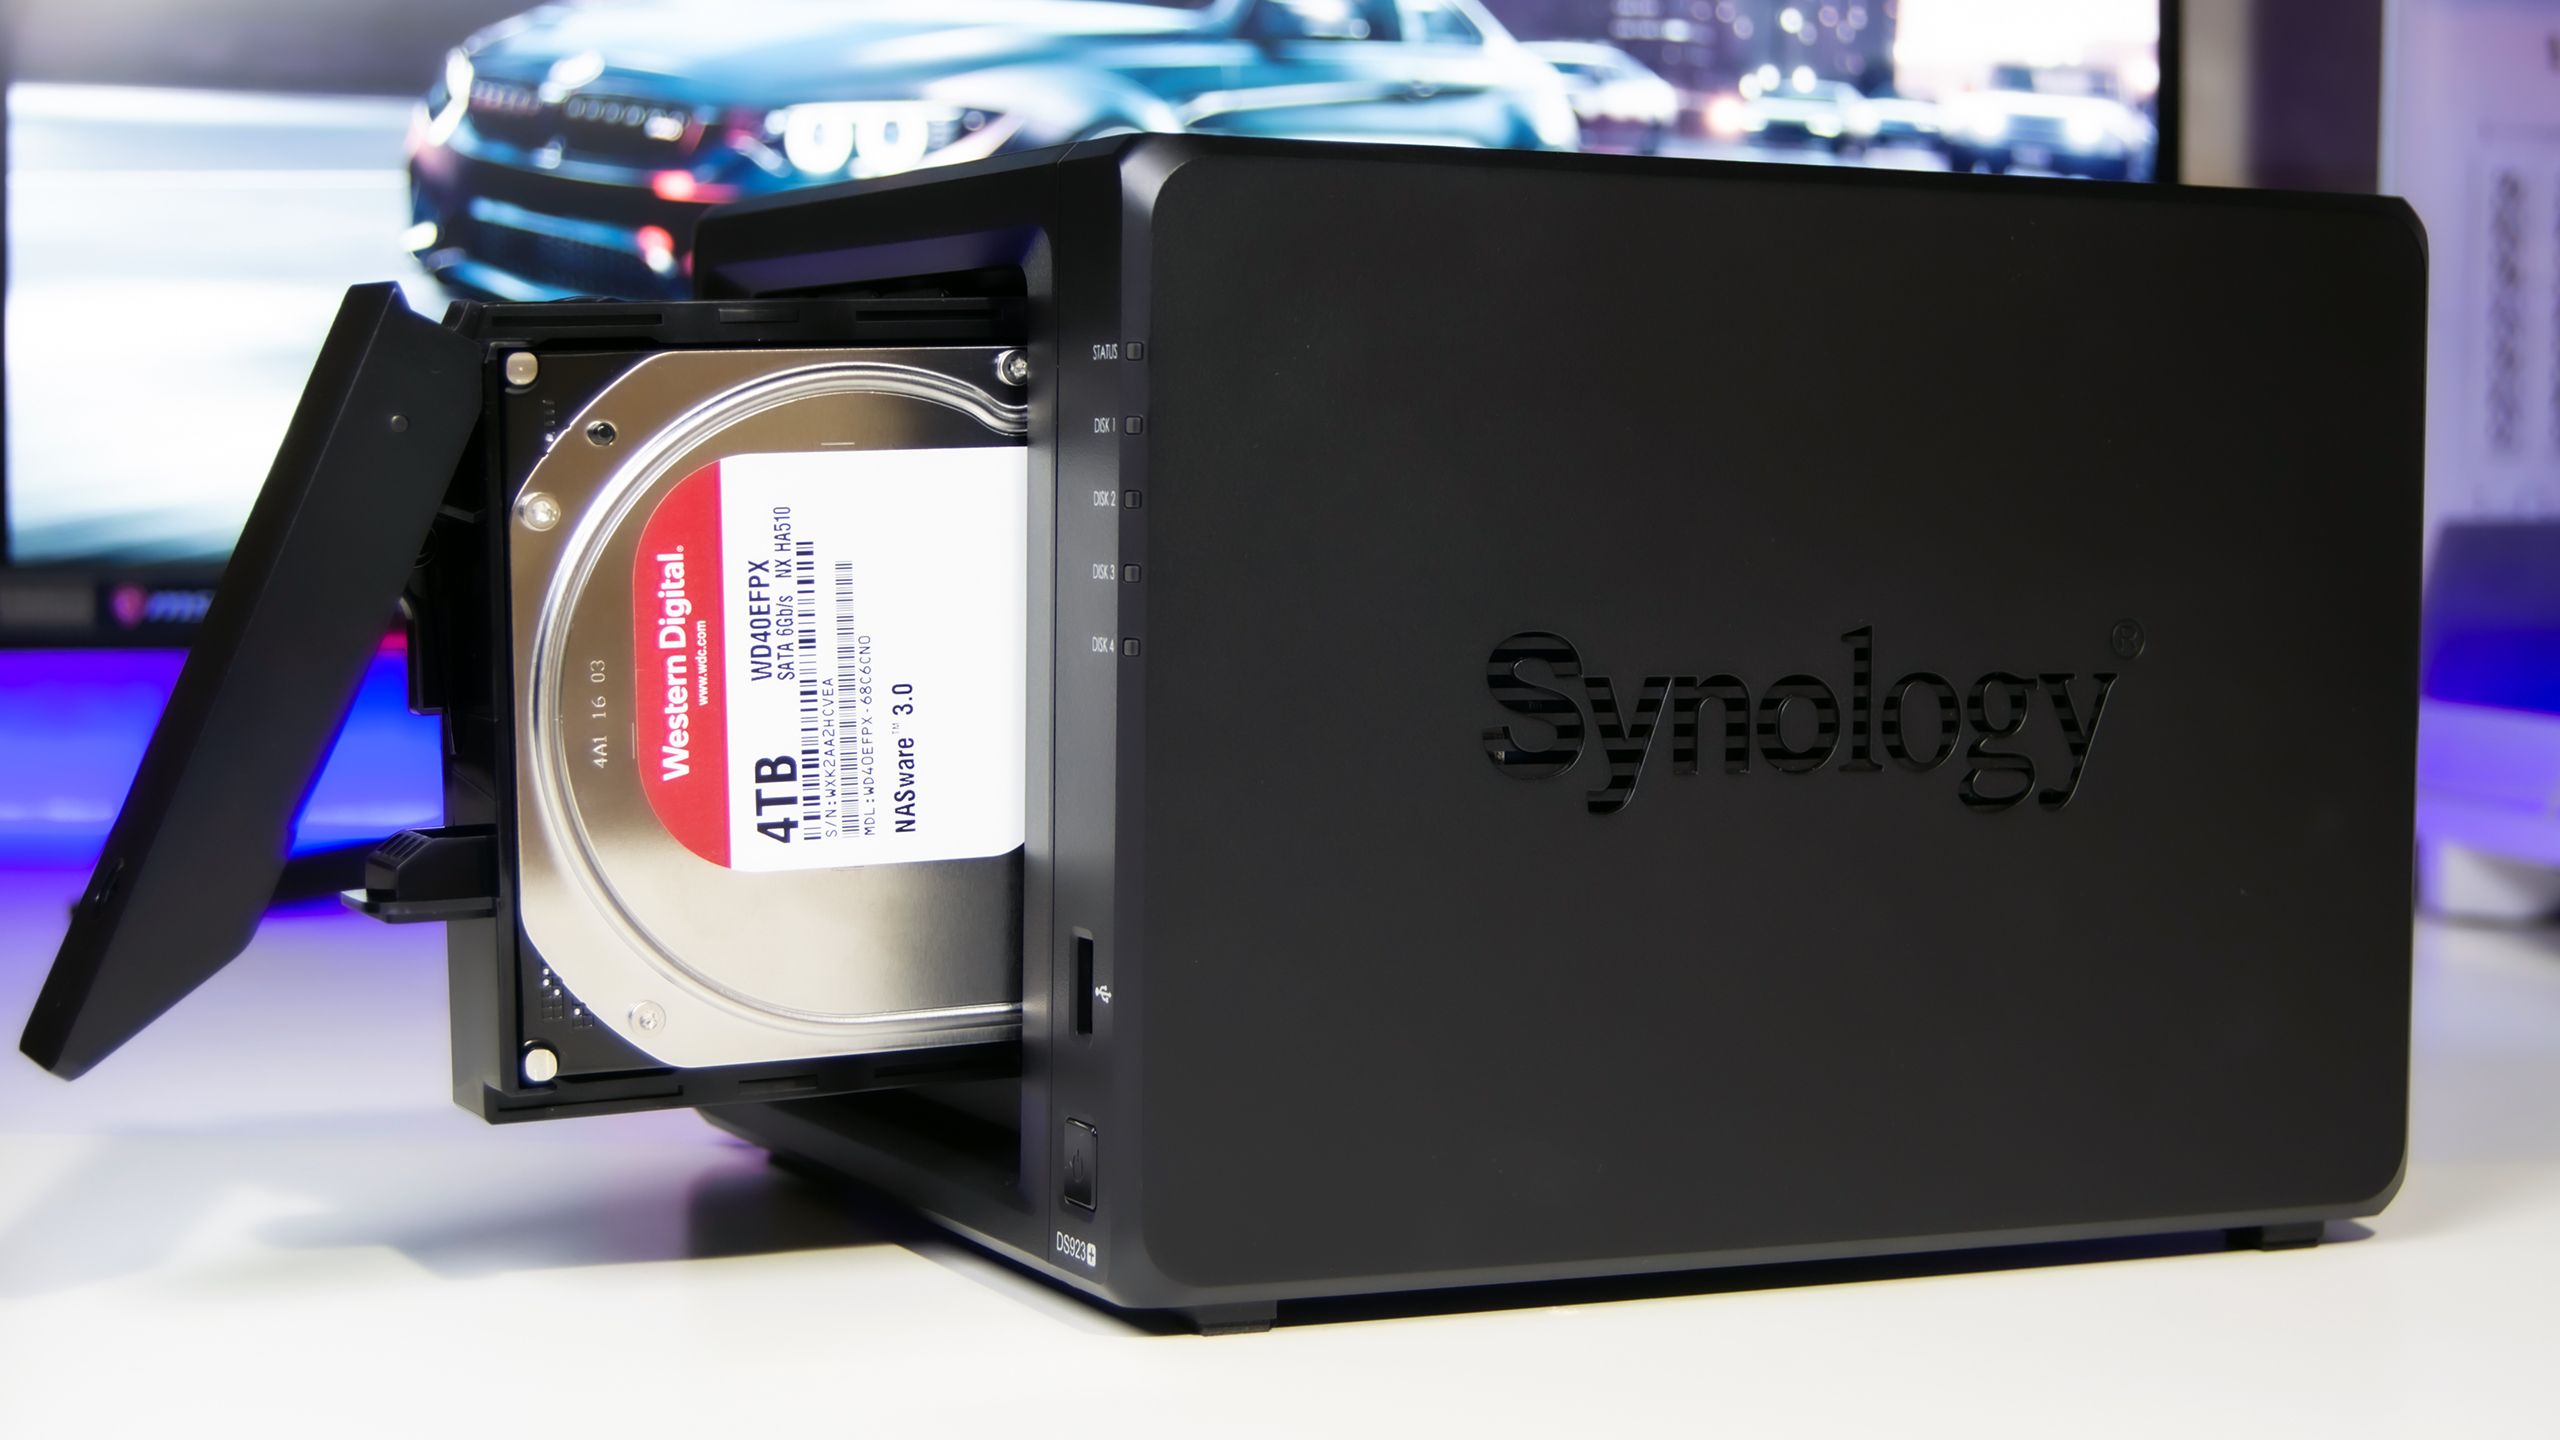 مراجعة وحدة التخزين الشبكى +Synology DiskStation DS923 مع سرعة نقل ملفات مزهلة